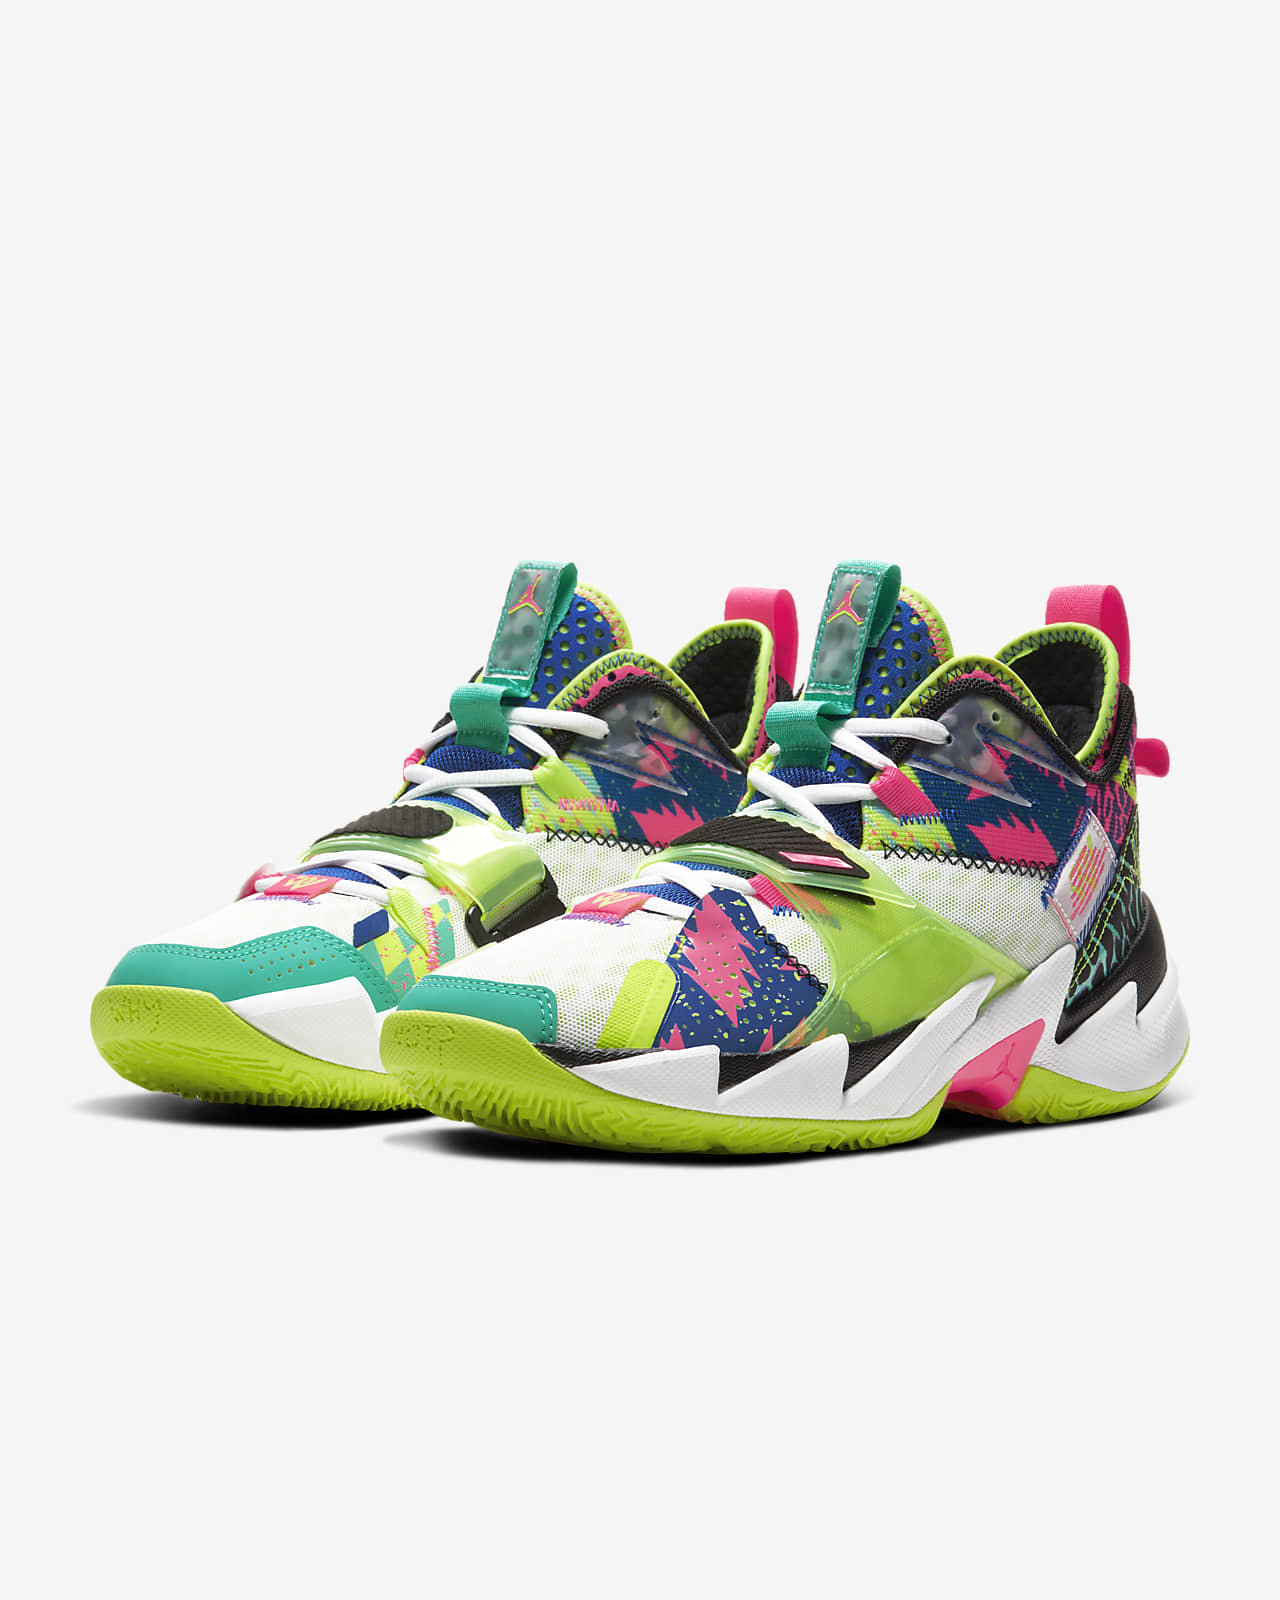 Jordan 'Why Not?' Zer0.3 PF Men's Basketball Shoe. Nike ID